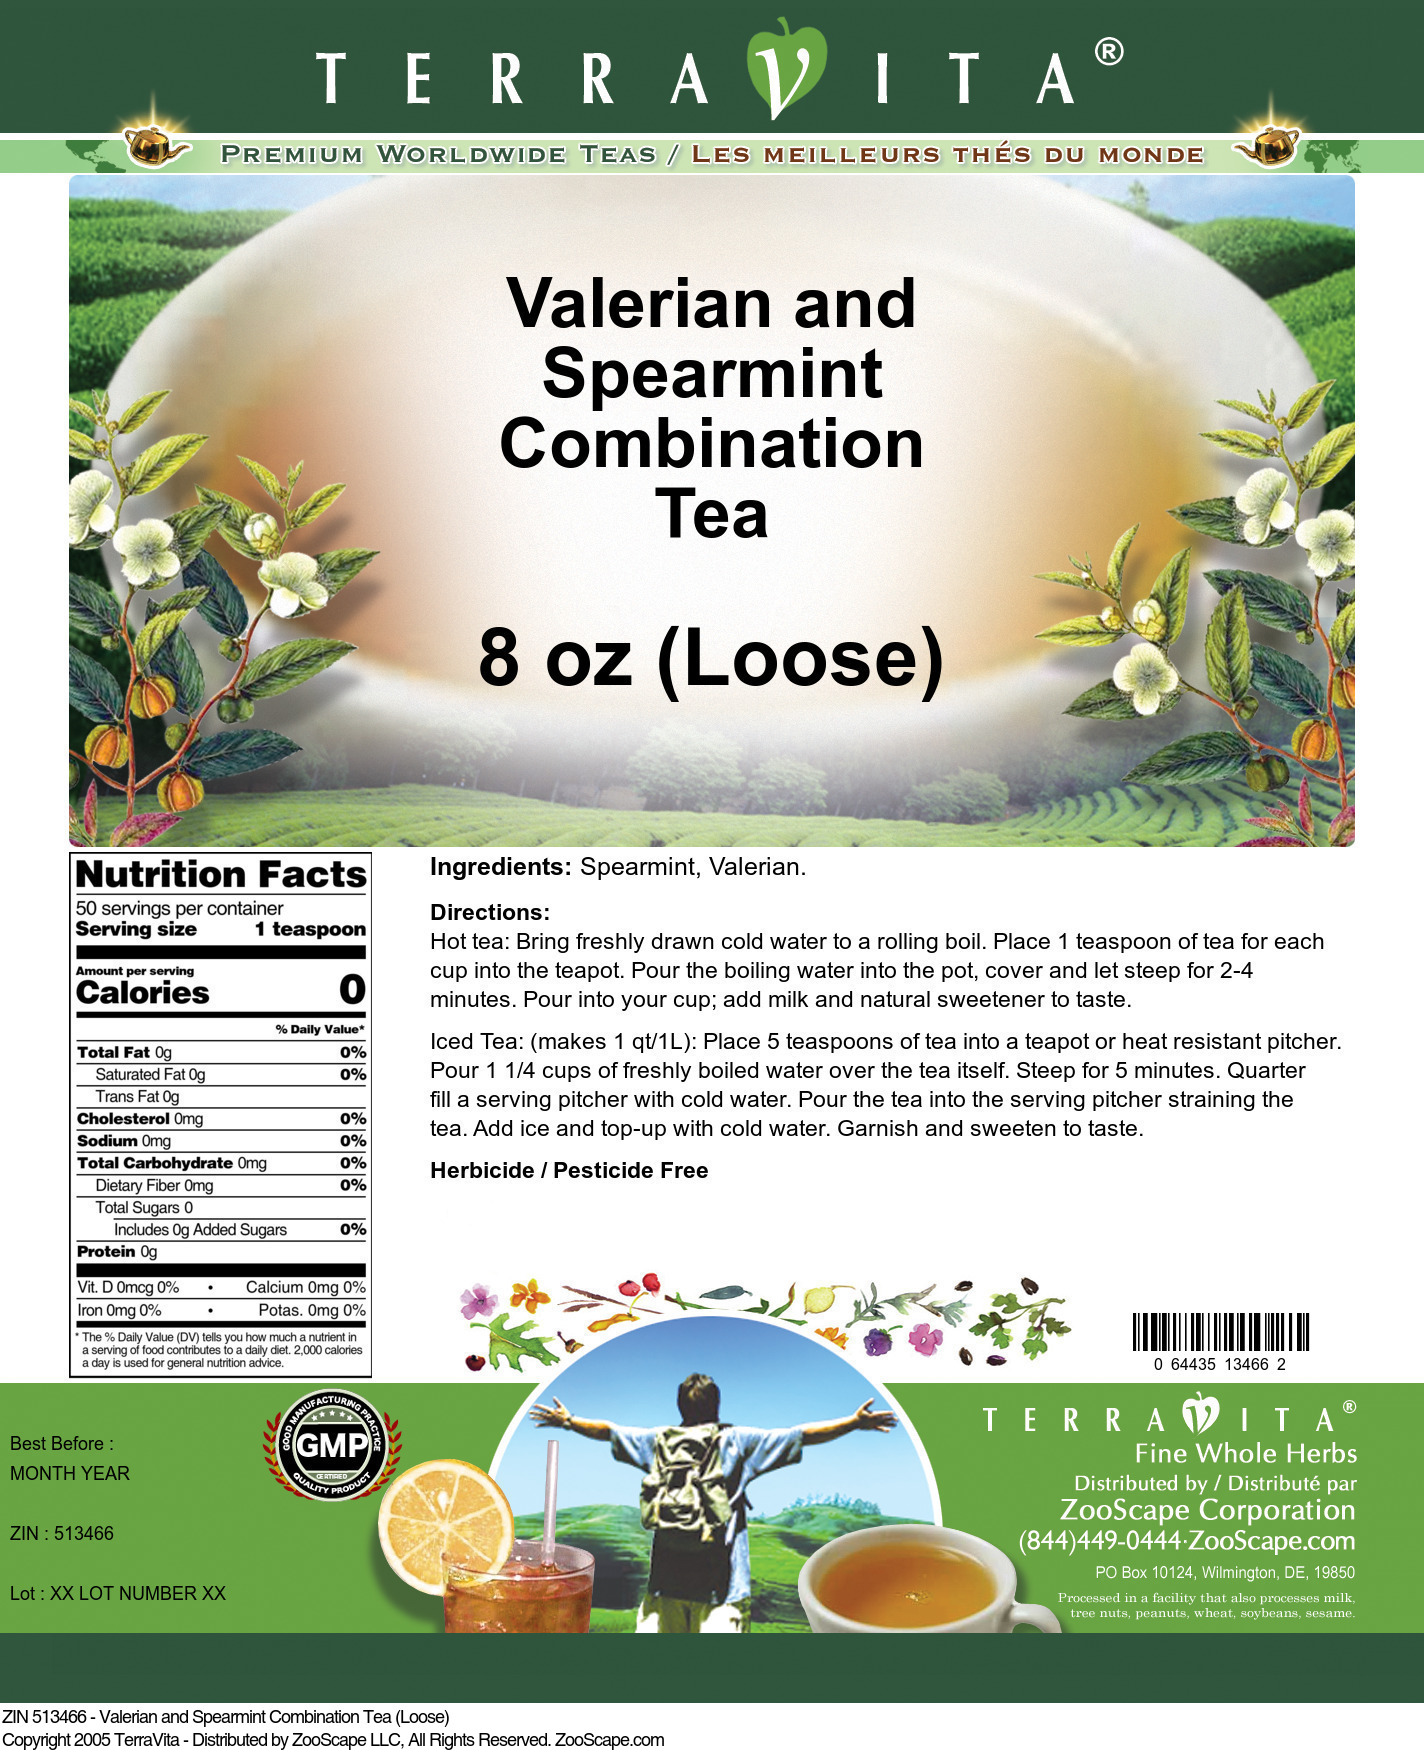 Valerian and Spearmint Combination Tea (Loose) - Label